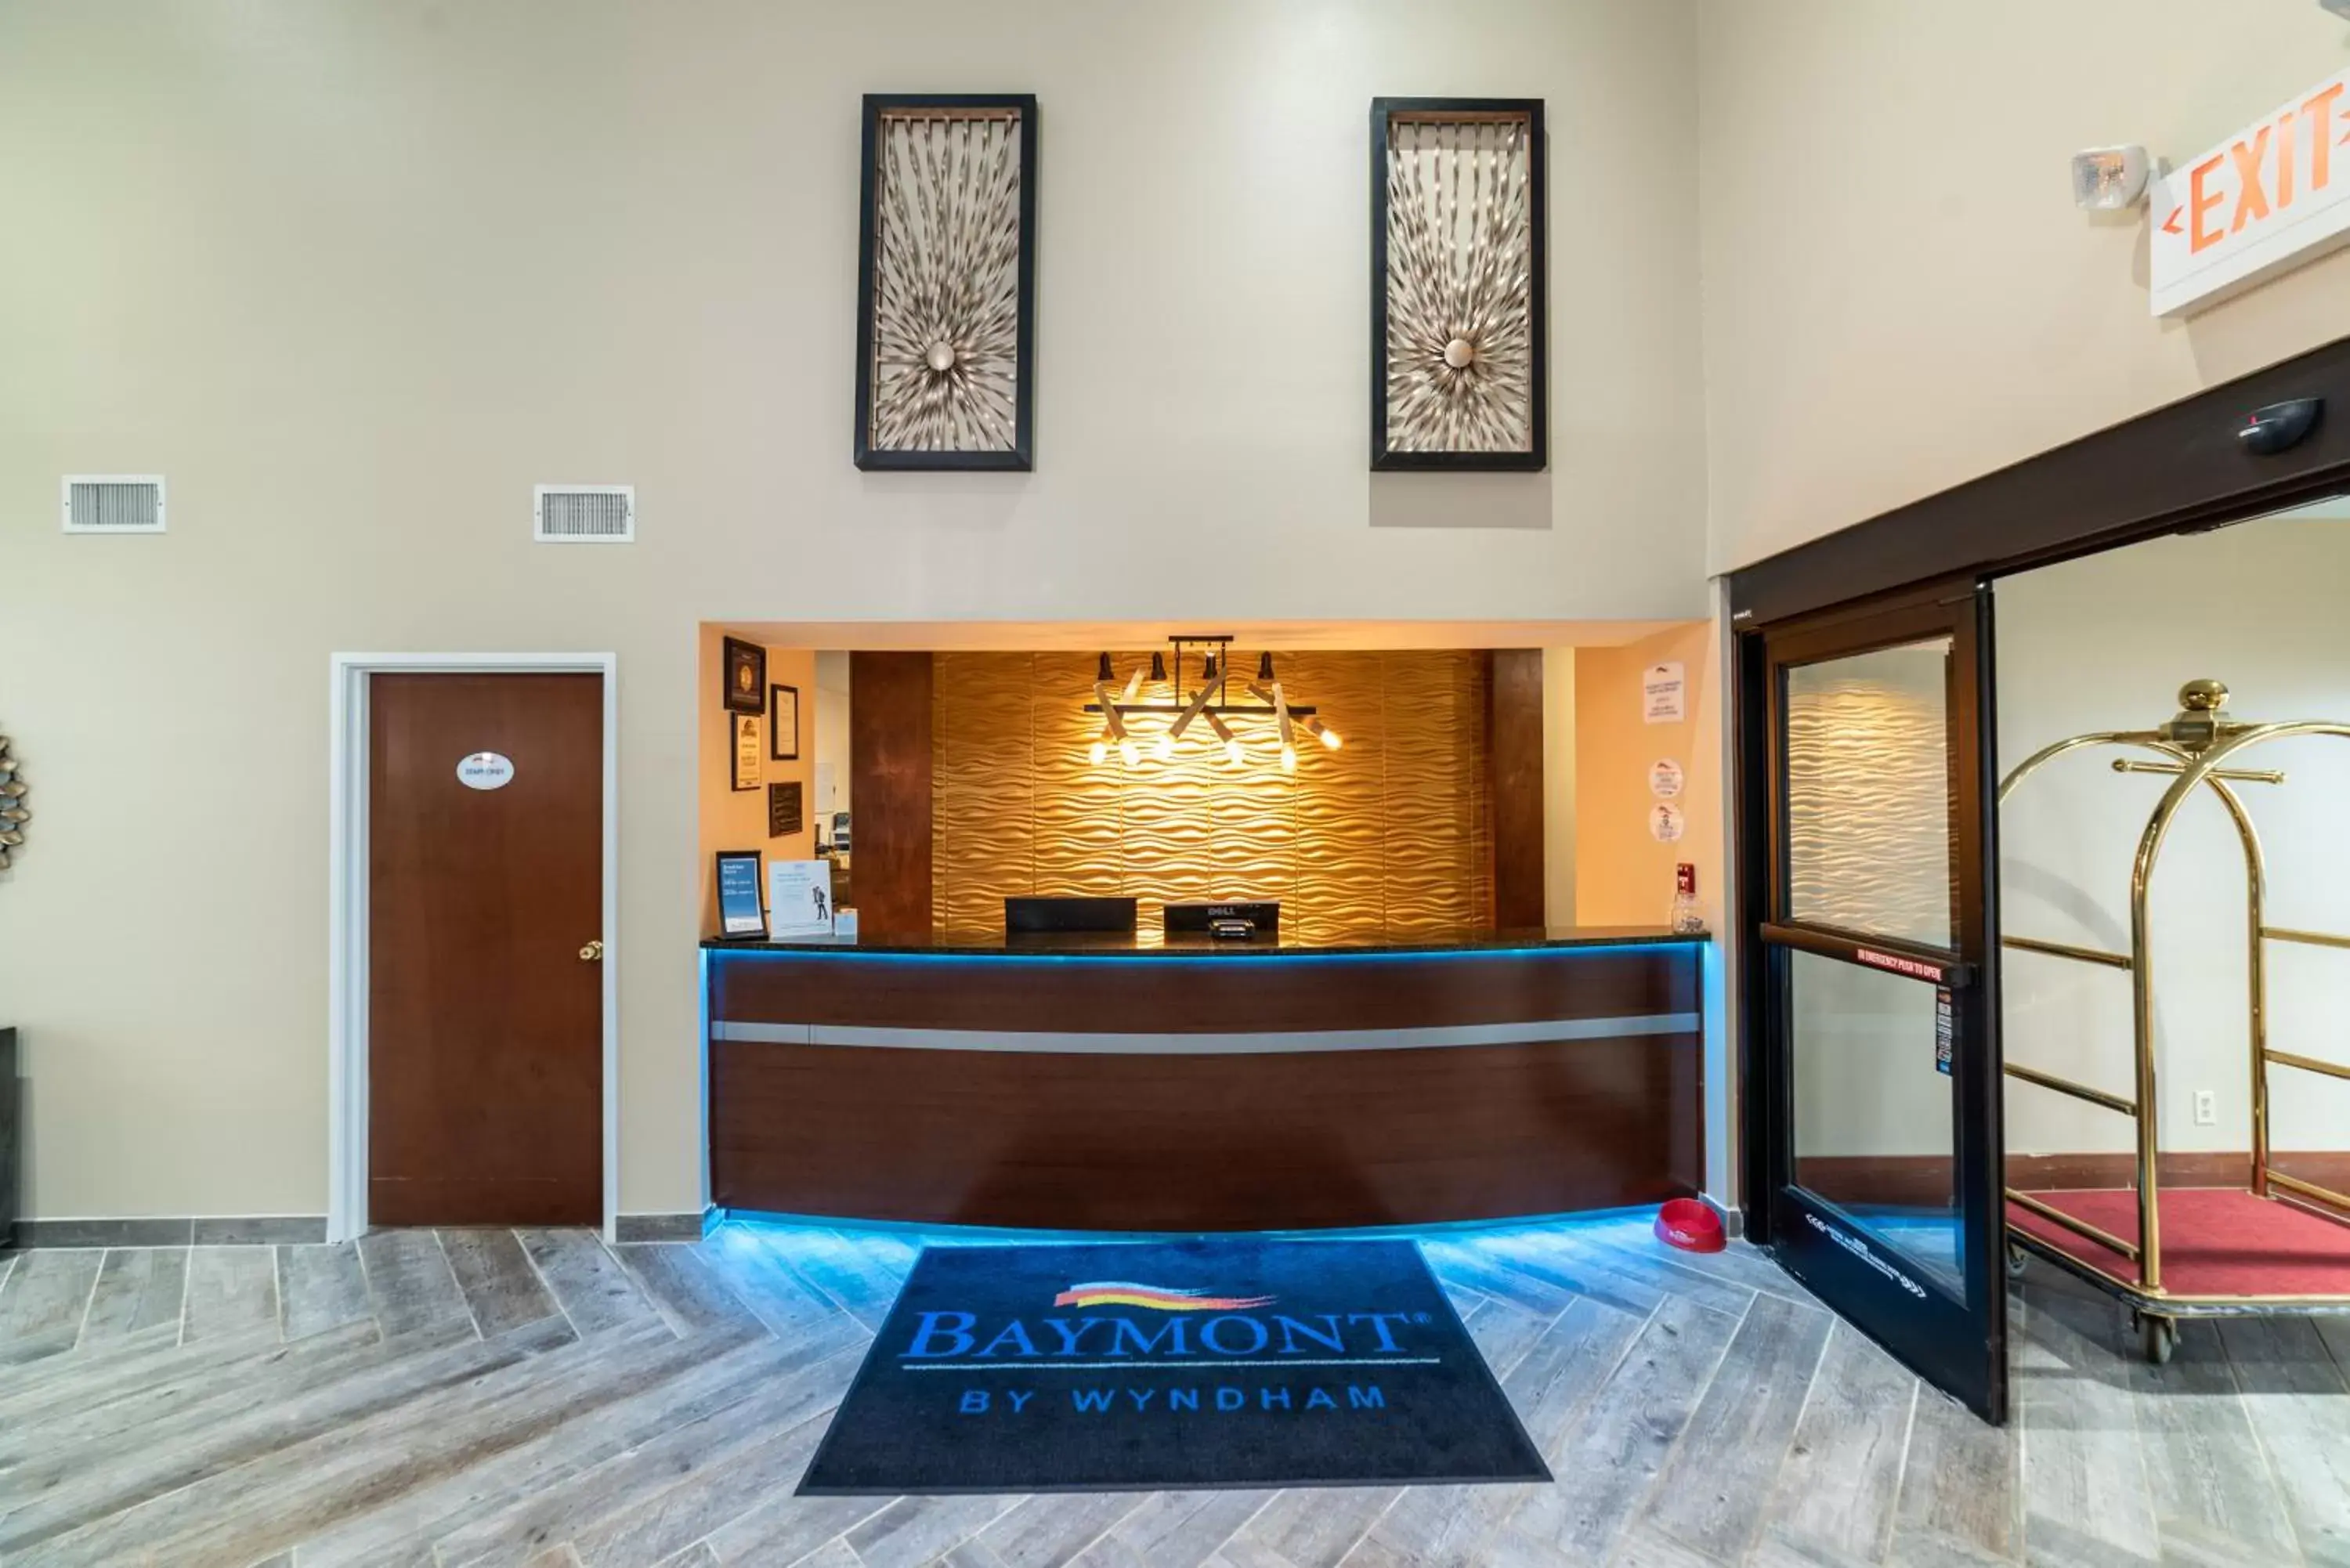 Lobby or reception, Lobby/Reception in Baymont by Wyndham Caddo Valley/Arkadelphia